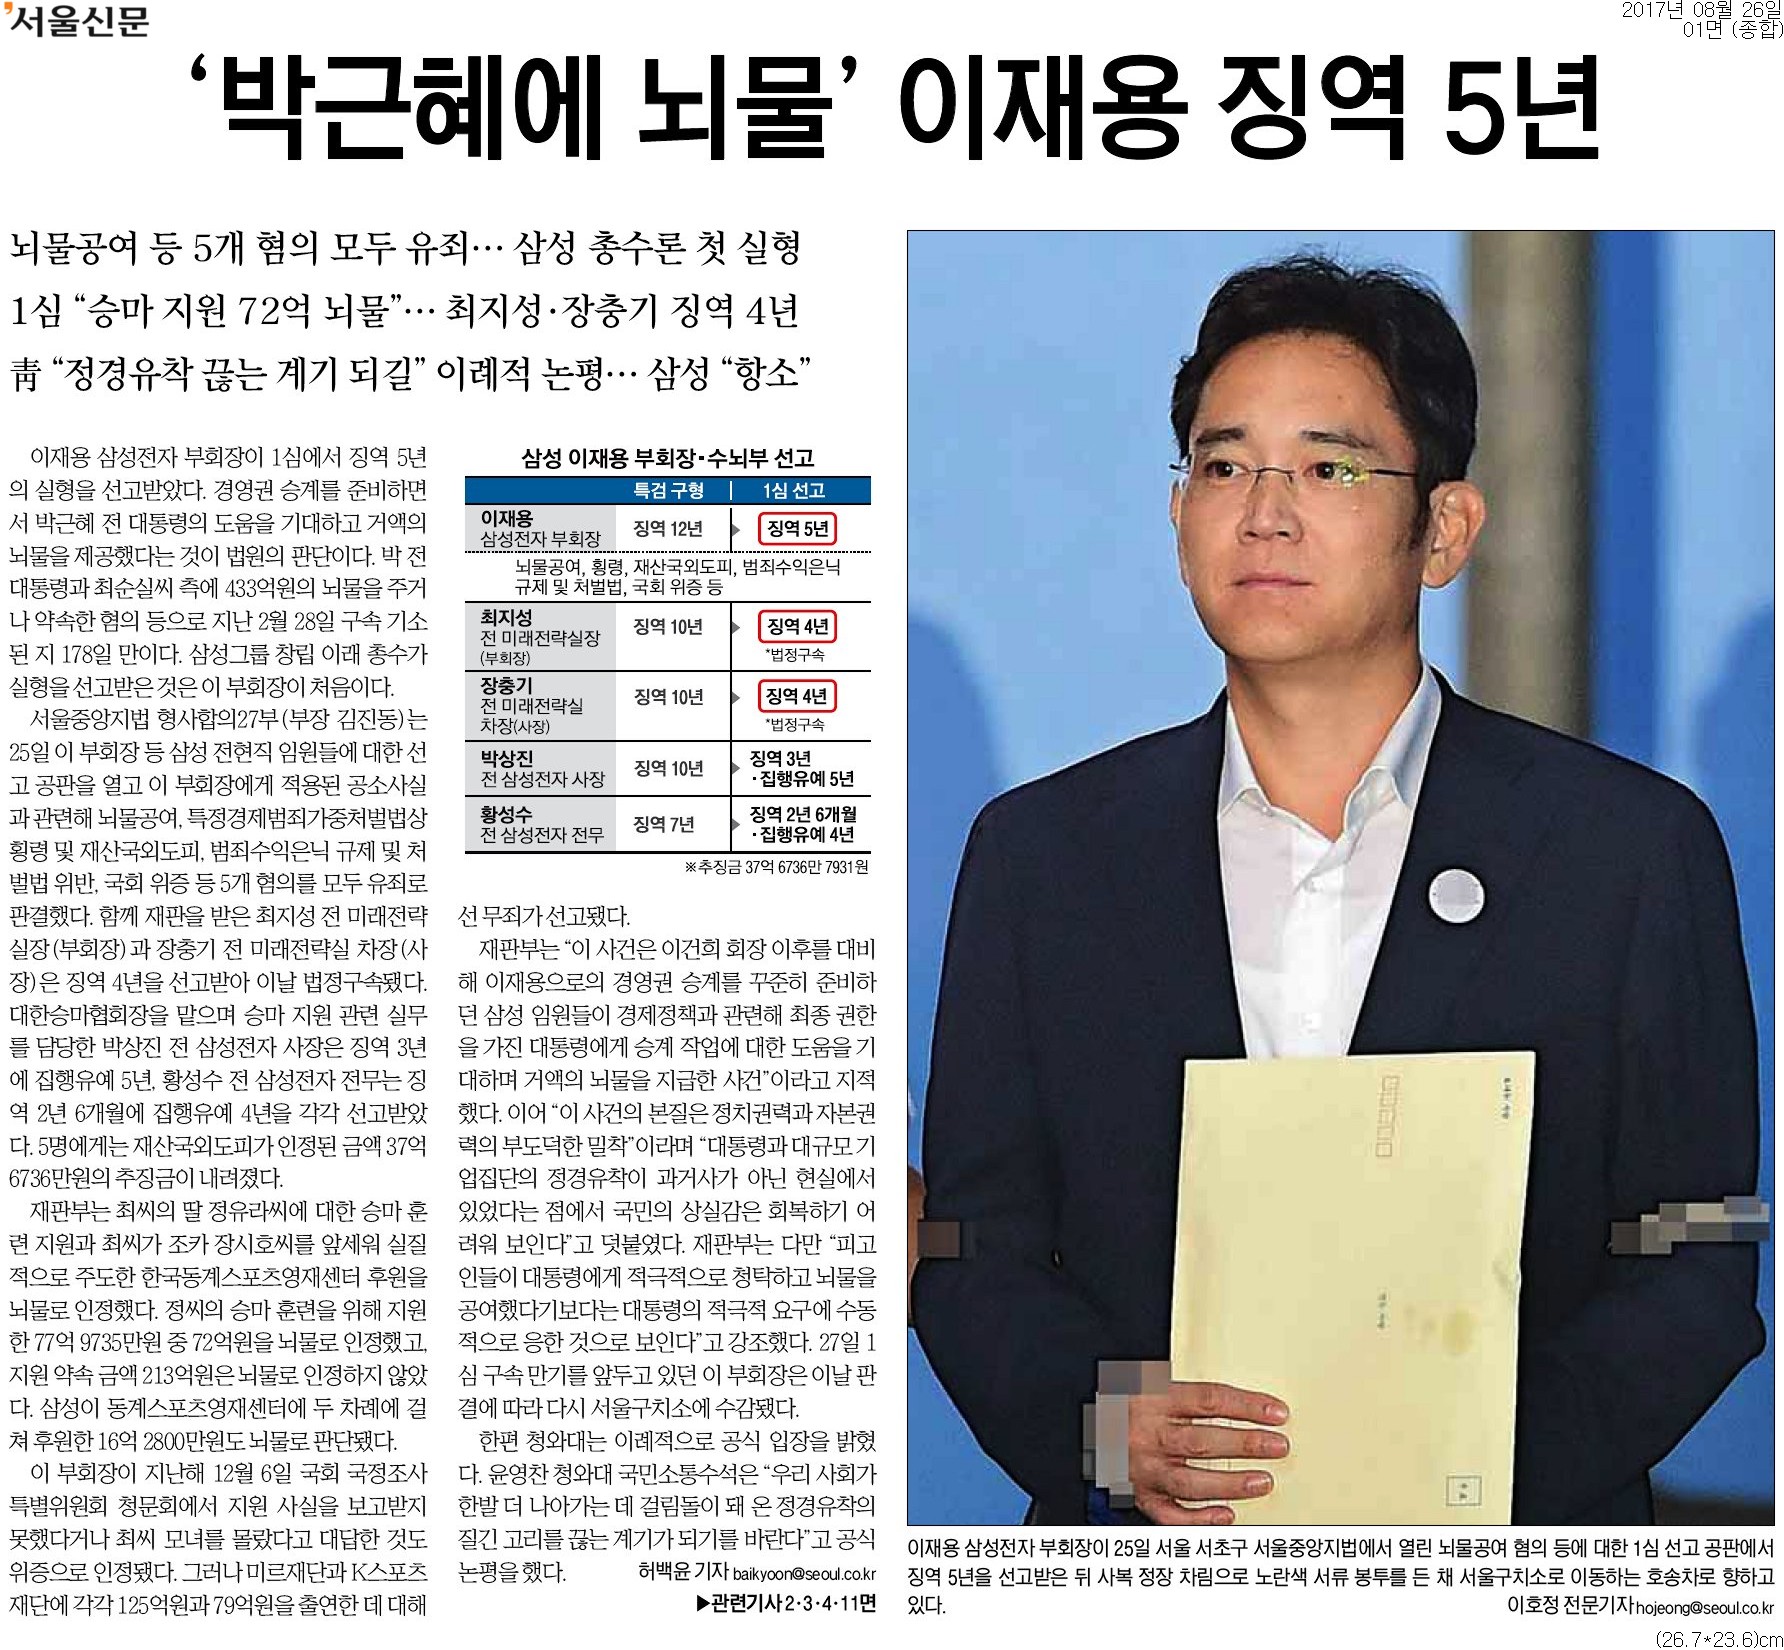 ▲ 서울신문 1면 기사